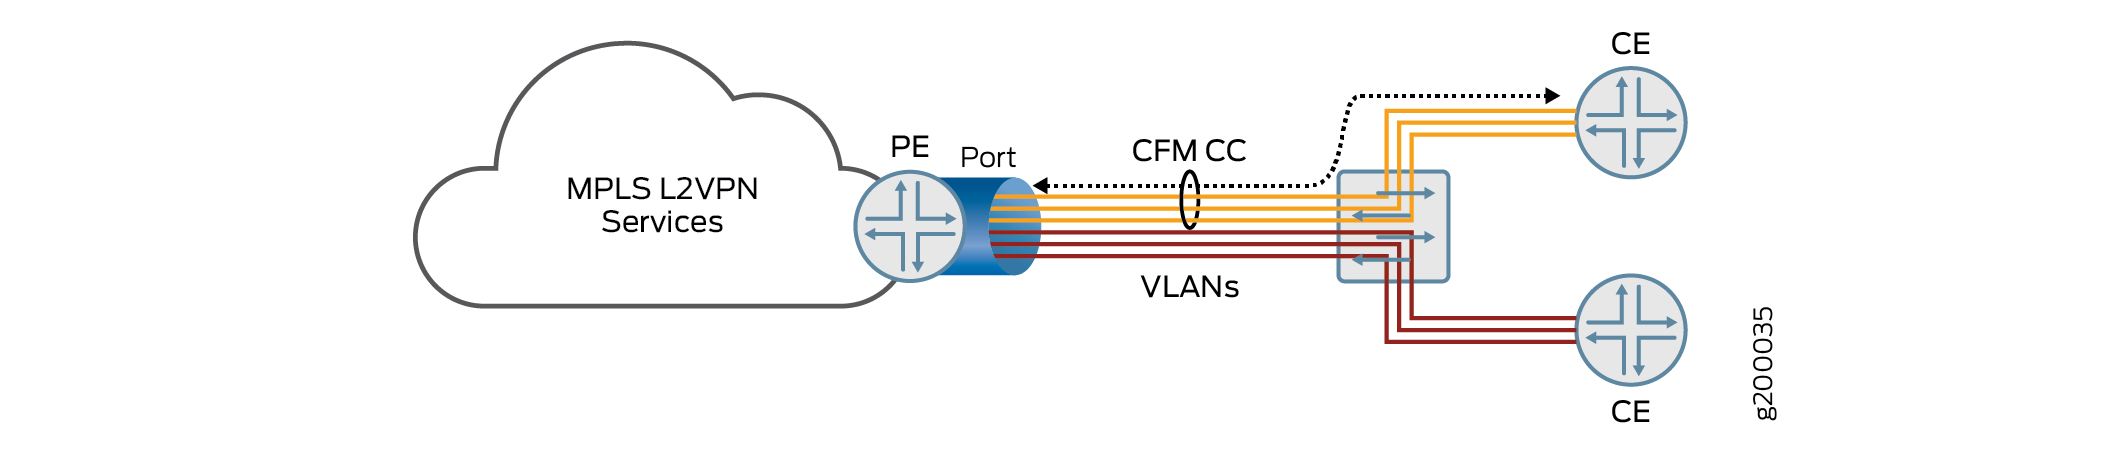 Topologie mehrerer VLAN-Services, die sich einen einzigen Port auf dem PE-Router teilen, der für mehrere CE-Router bestimmt ist